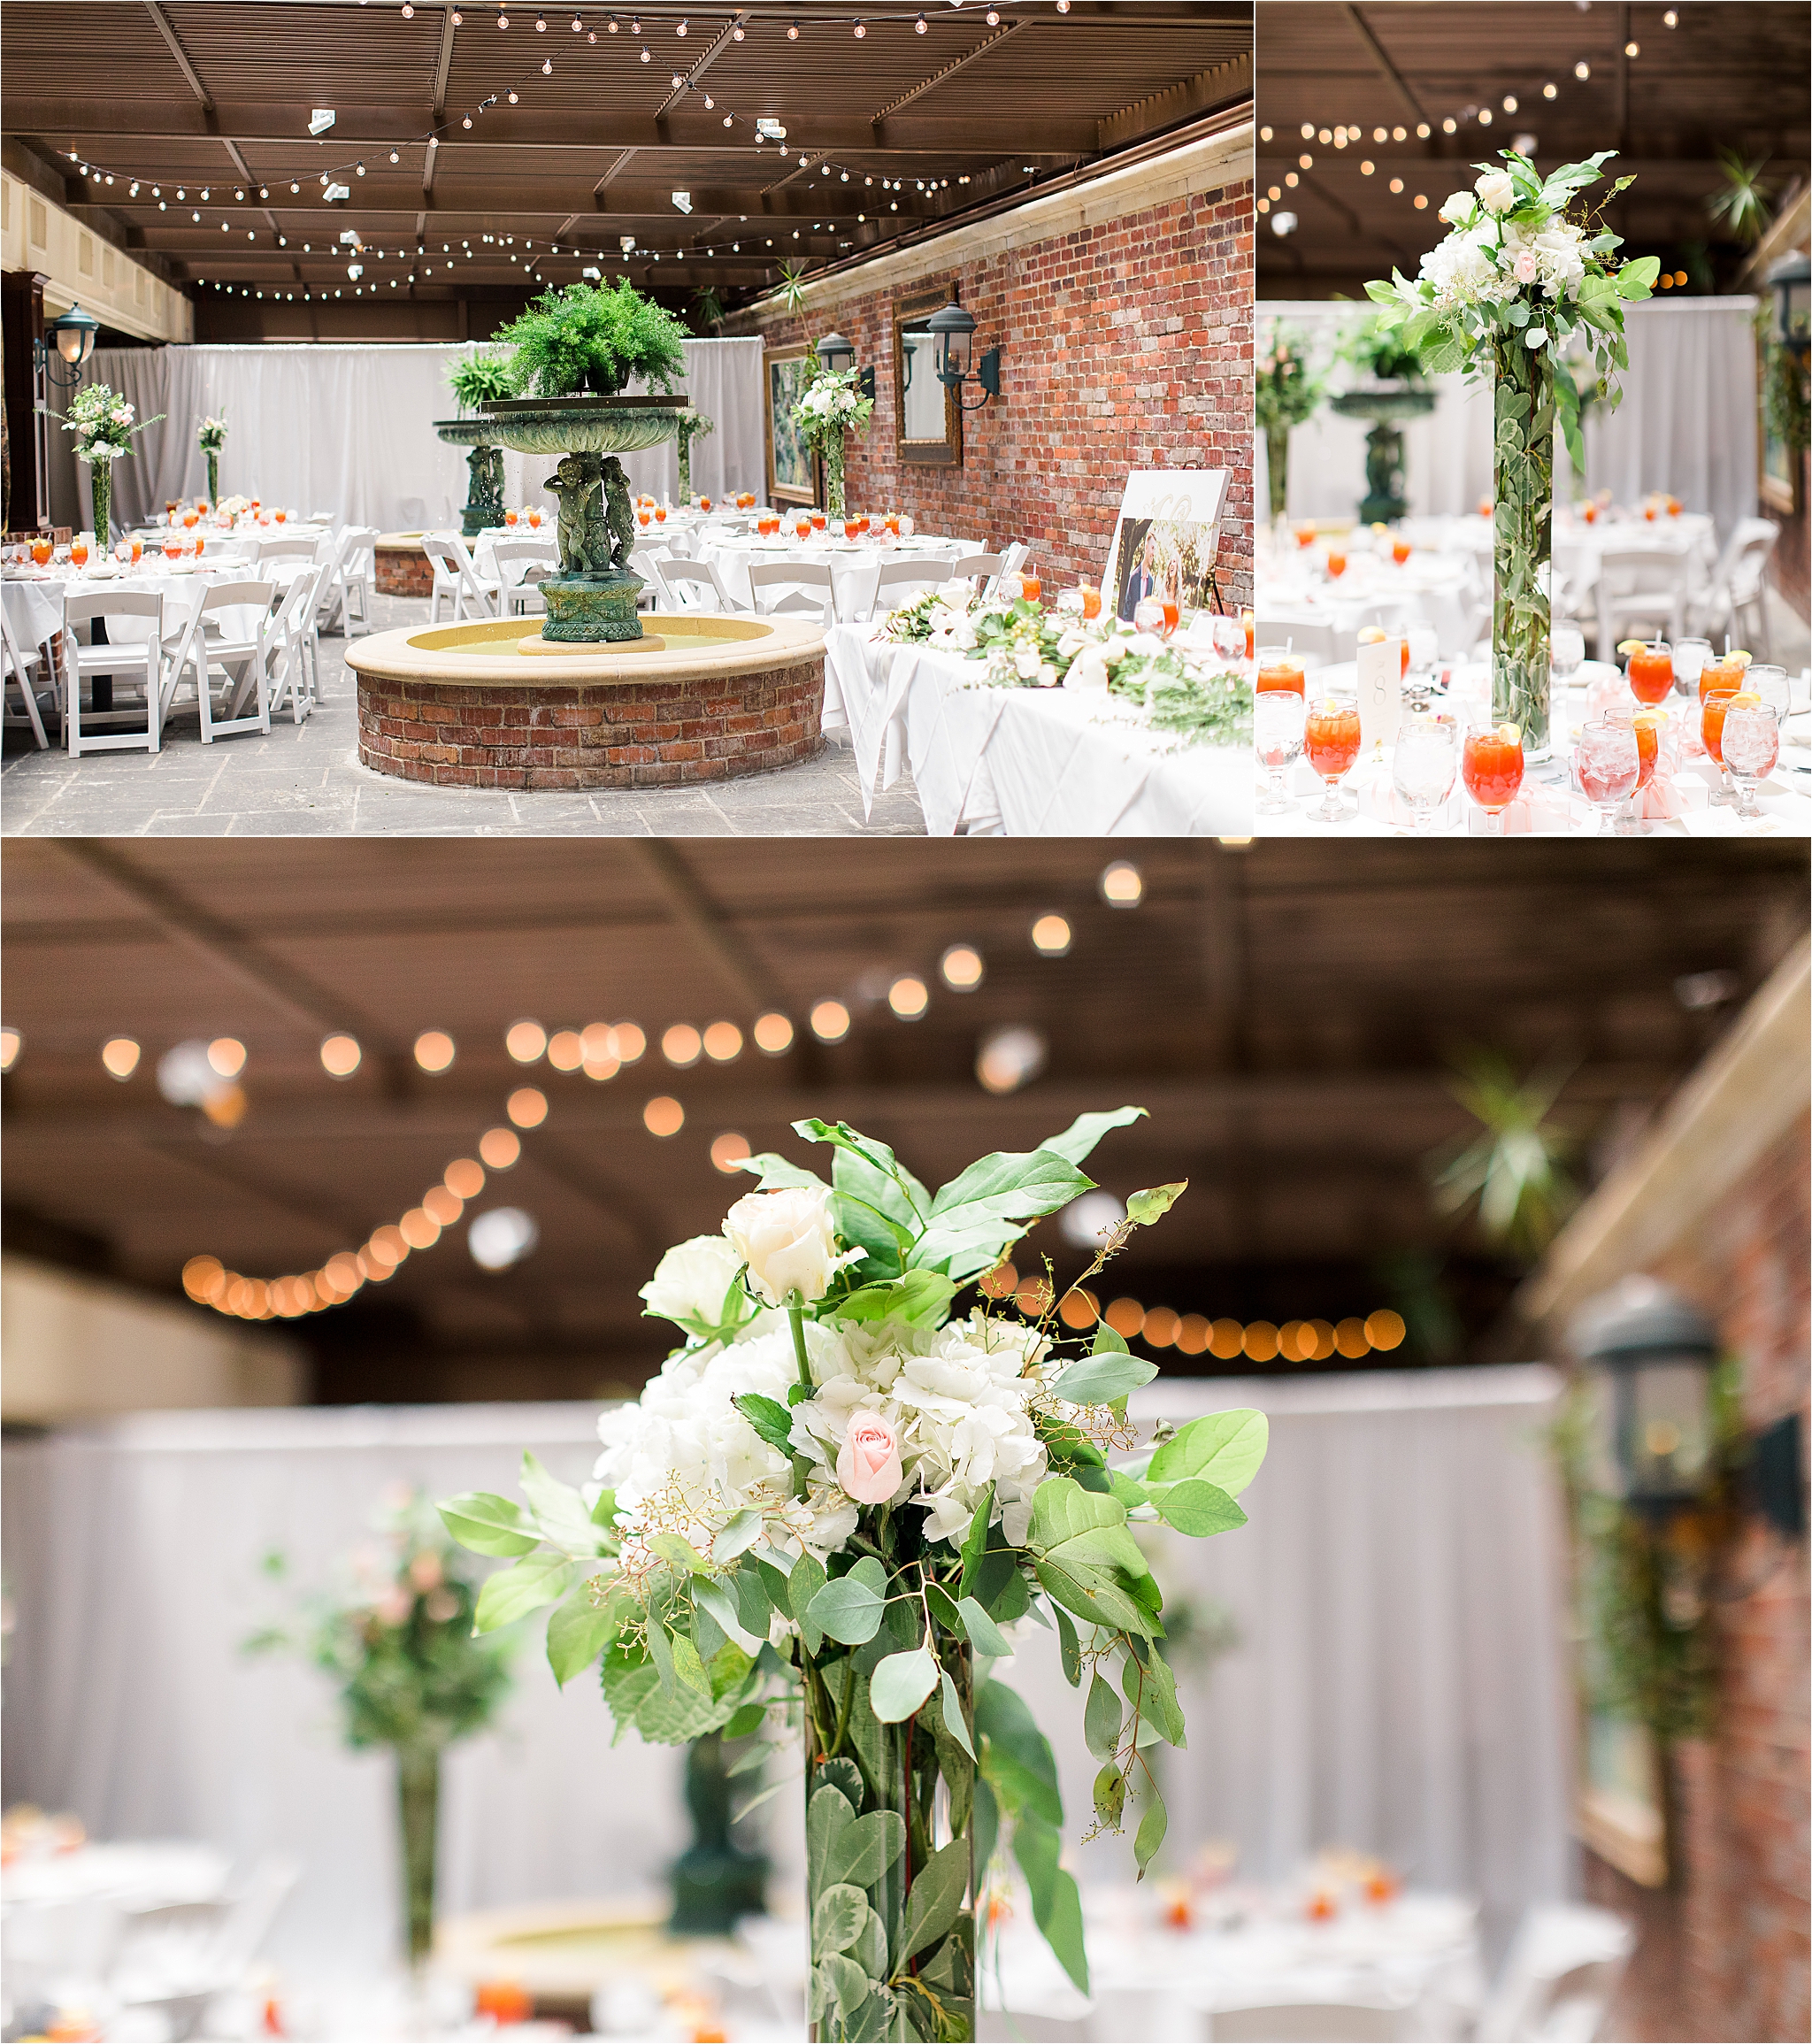 Wedding Reception Details at III Forks Dallas by Dallas Wedding Photographer Jillian Hogan 